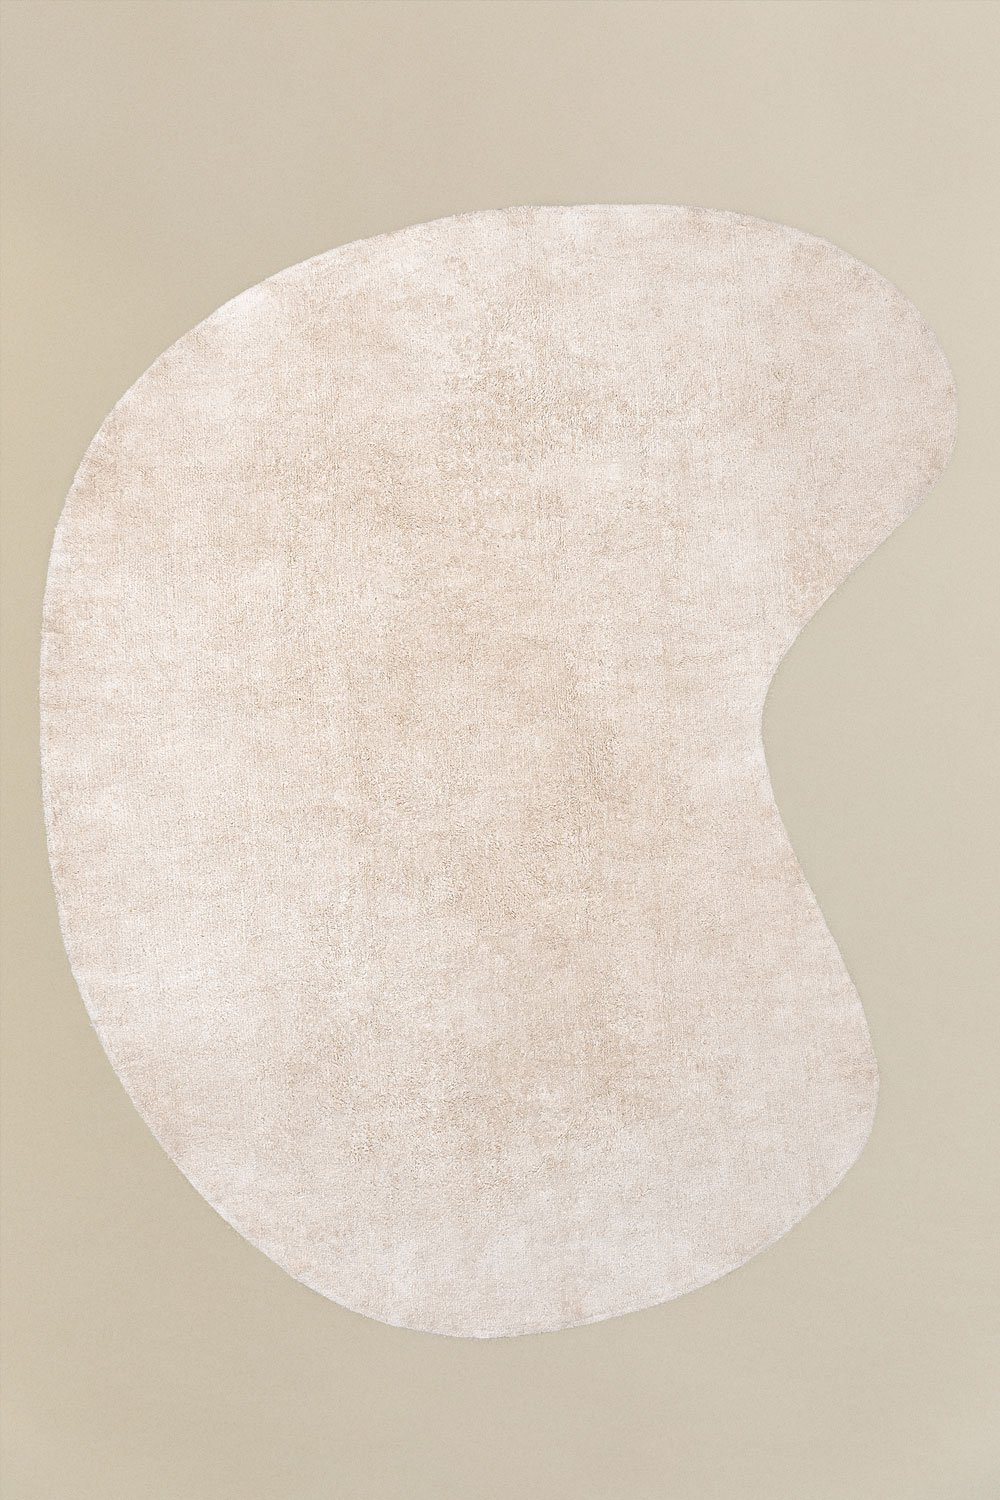 Katoenen vloerkleed (290x250 cm) Francine , galerij beeld 1